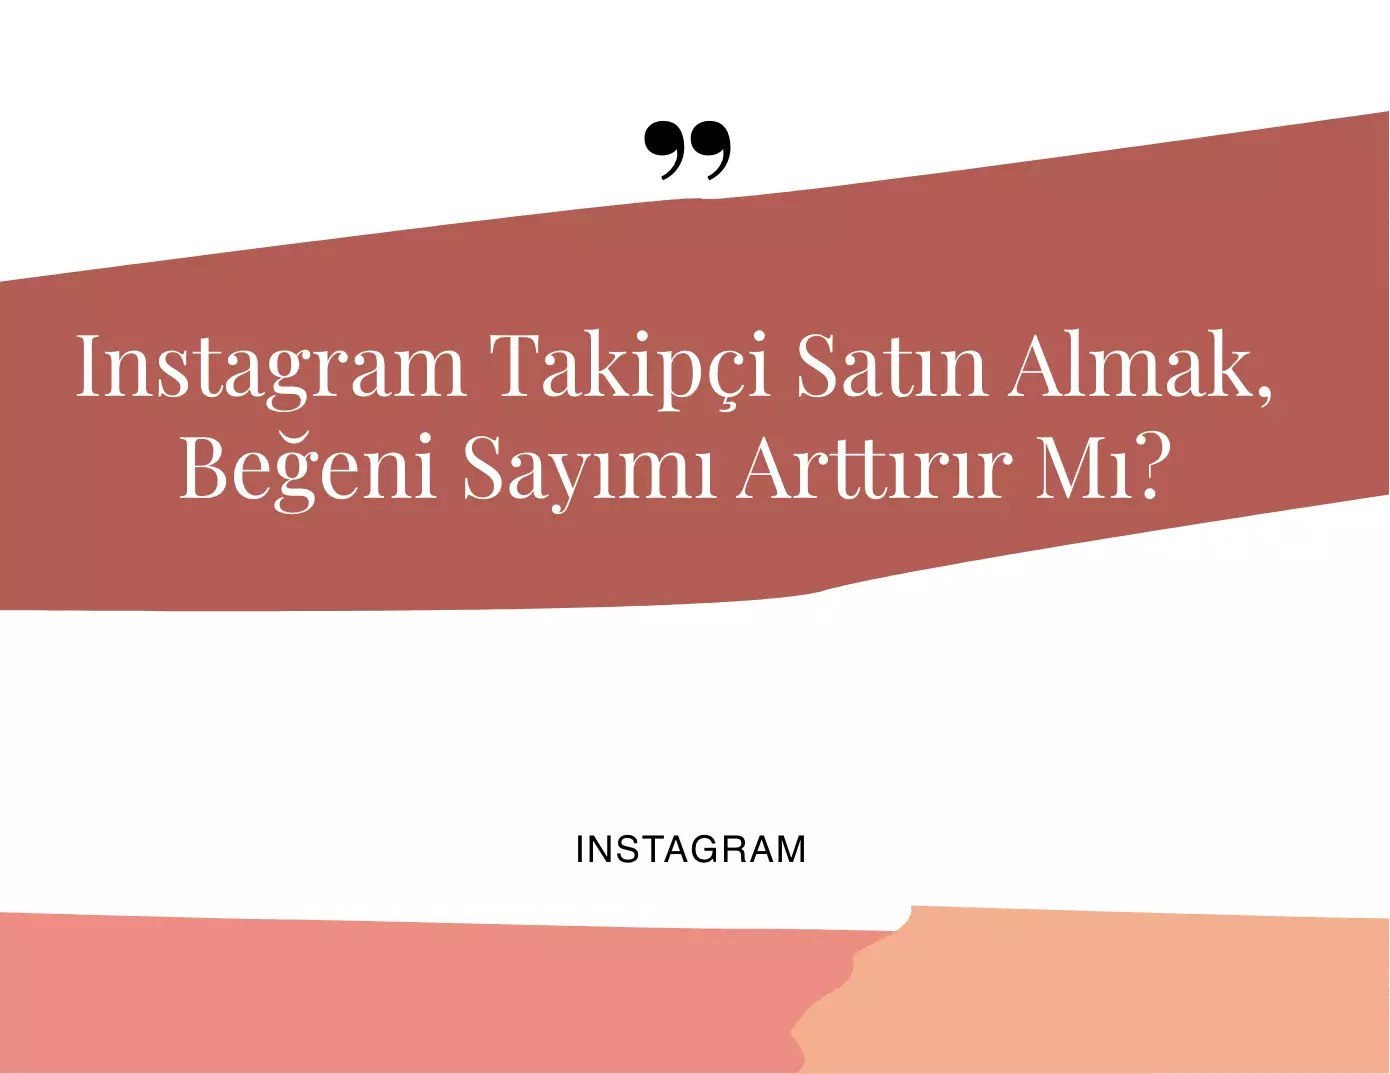 Instagram Takipçi Satın Almak Beğeni Sayımı Arttırır Mı?